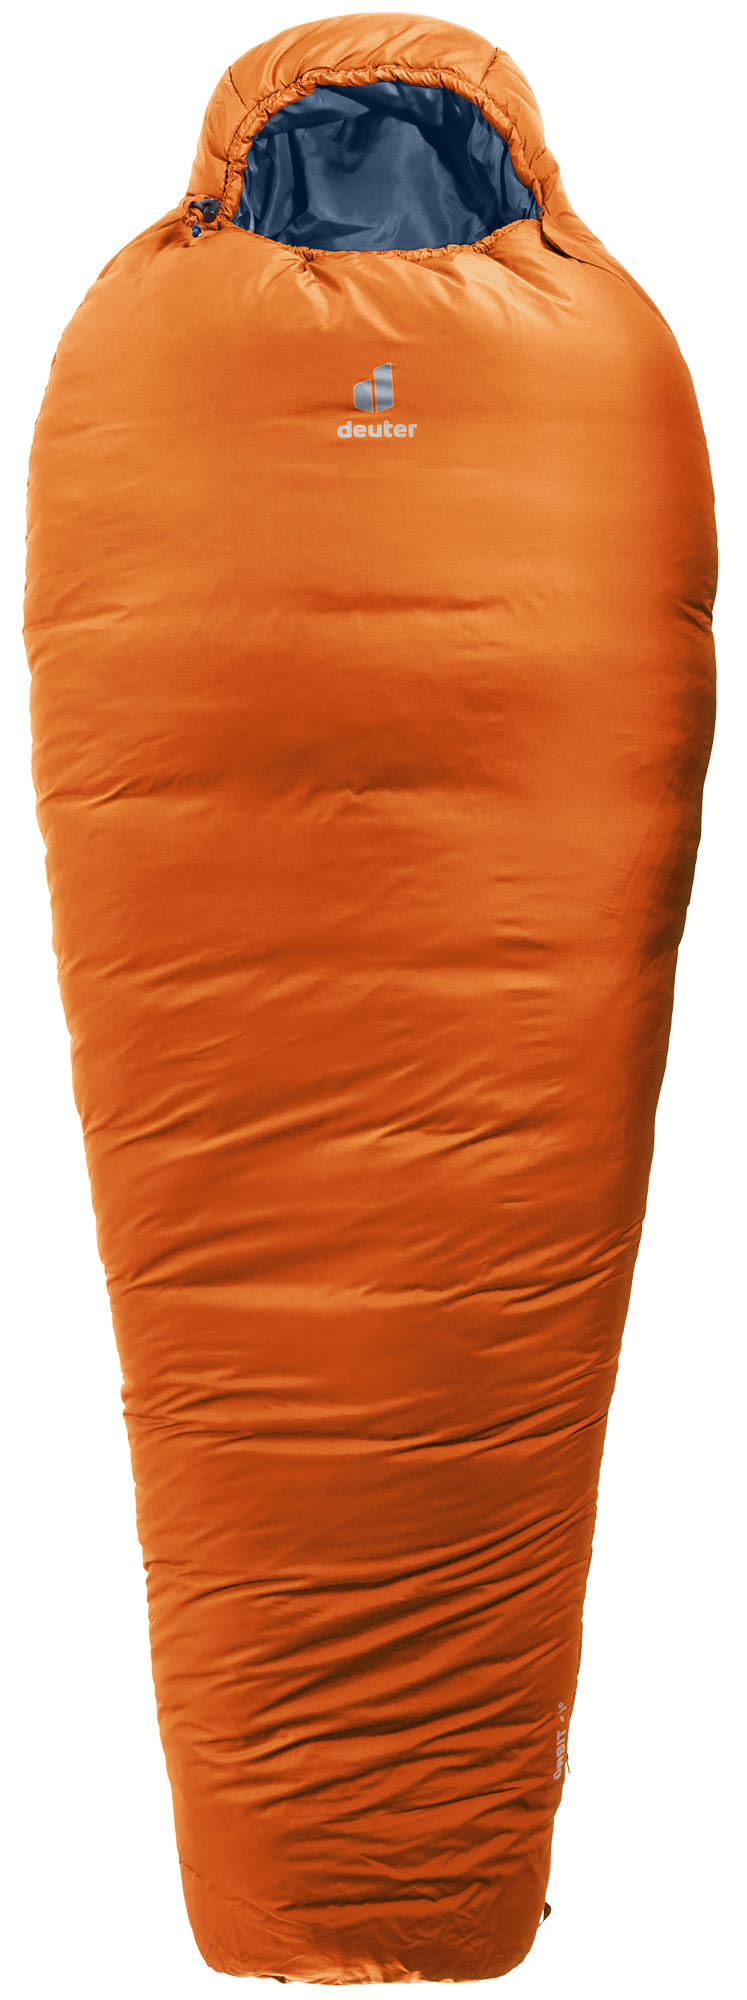 Deuter Orbit -5° Orange | Größe 208 cm - RV links |  Kunstfaserschlafsack